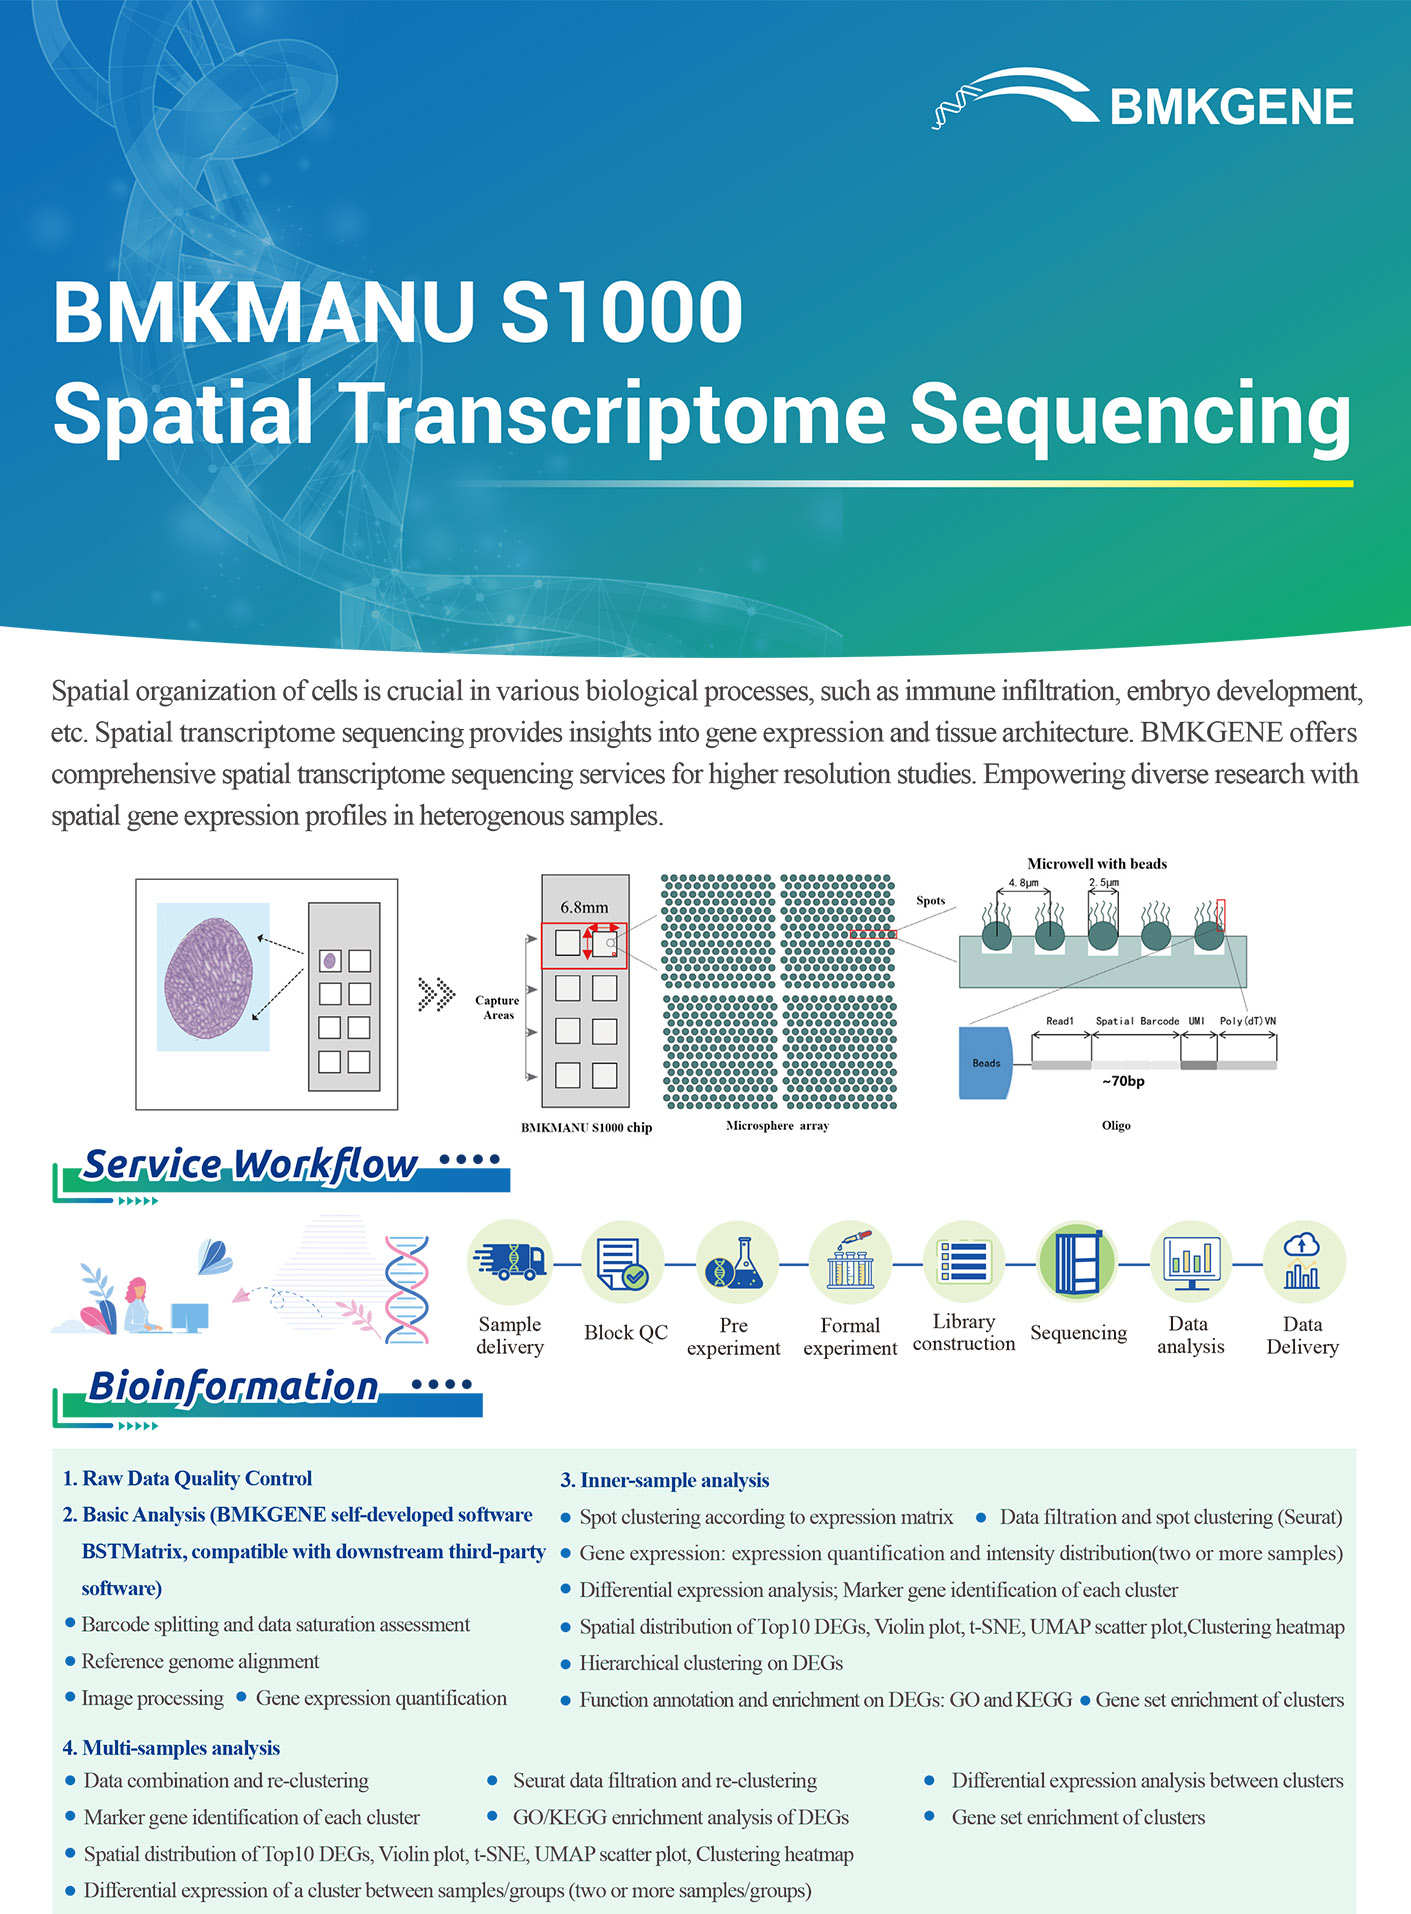 https://www.bmkgene.com/uploads/BMKMANU-S1000-Spatial-Transcriptome-Sequencing-BMKGENE-2310.pdf